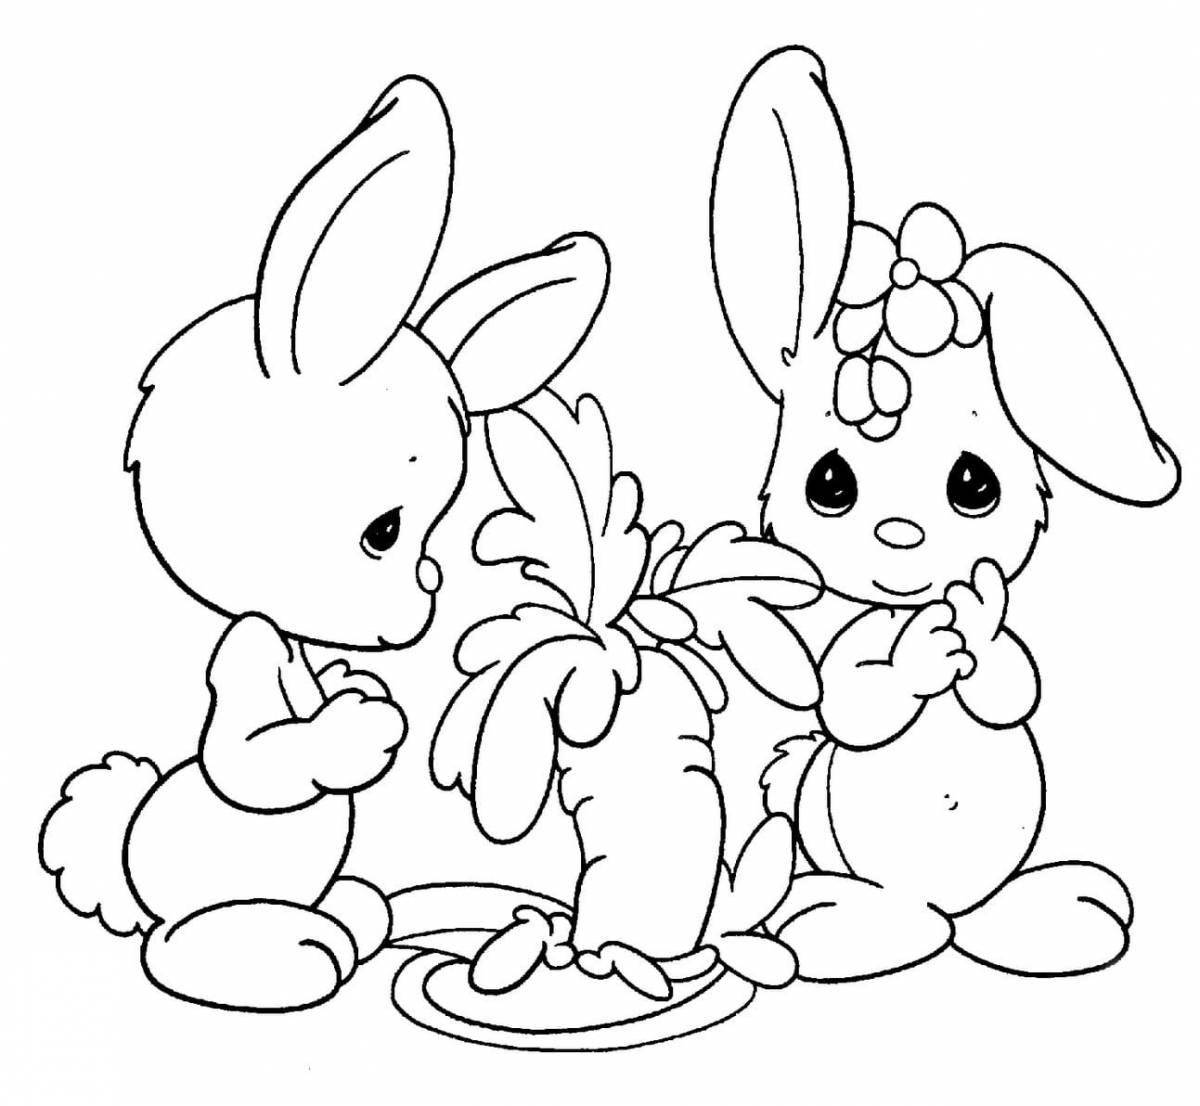 Увлекательная книжка-раскраска для кроликов